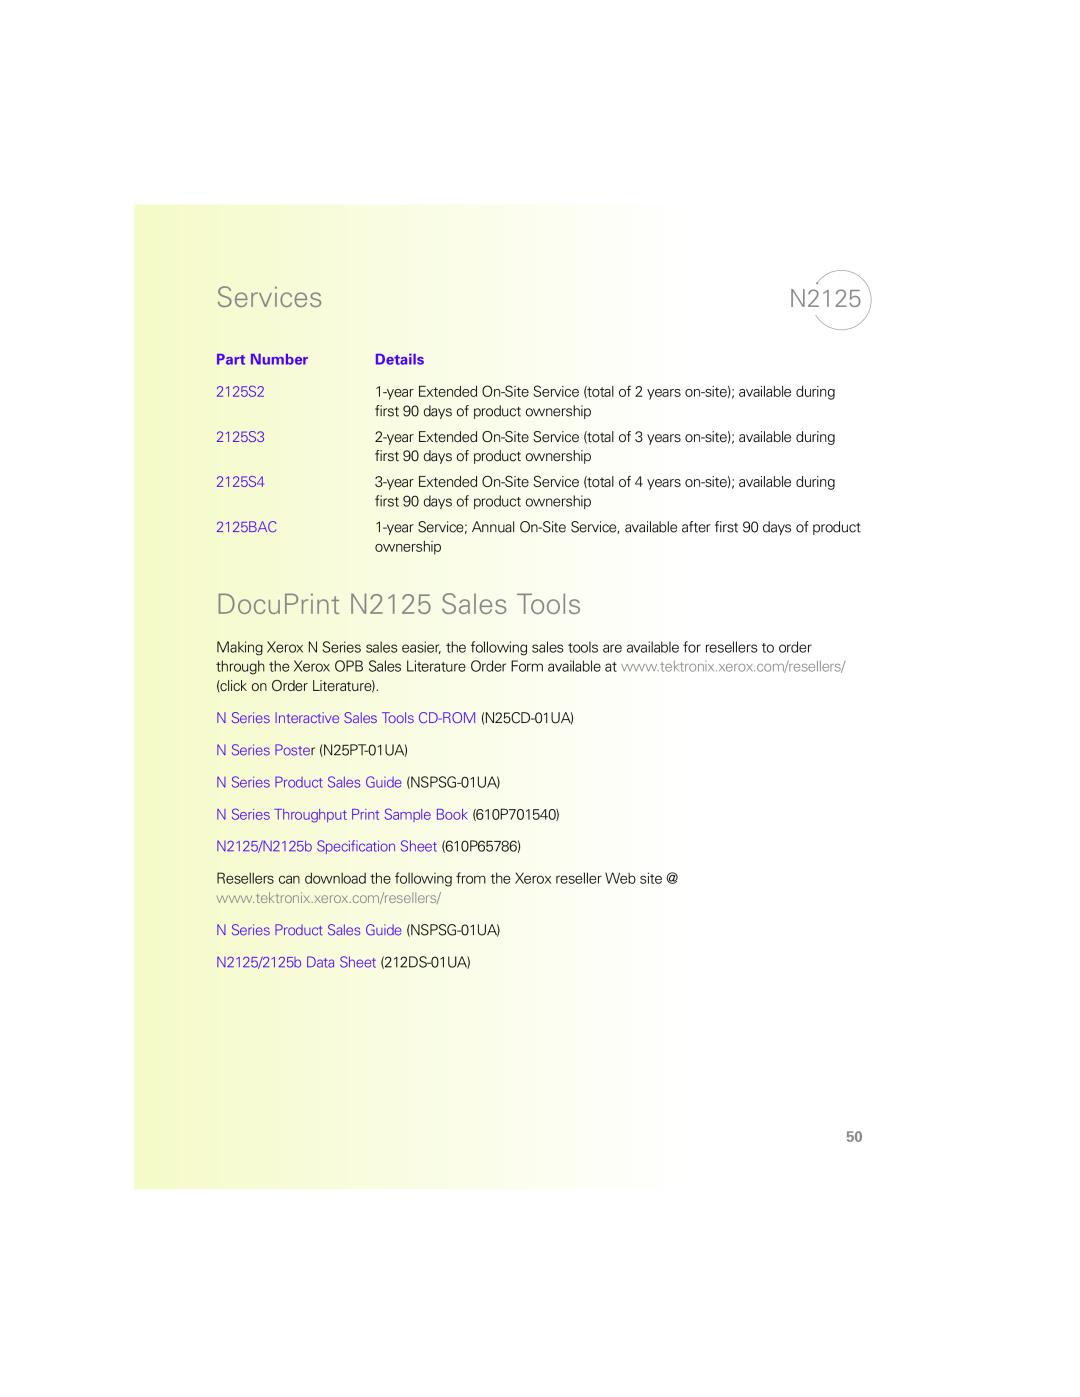 Xerox N Series manual DocuPrint N2125 Sales Tools, Services, Part Number, Details 